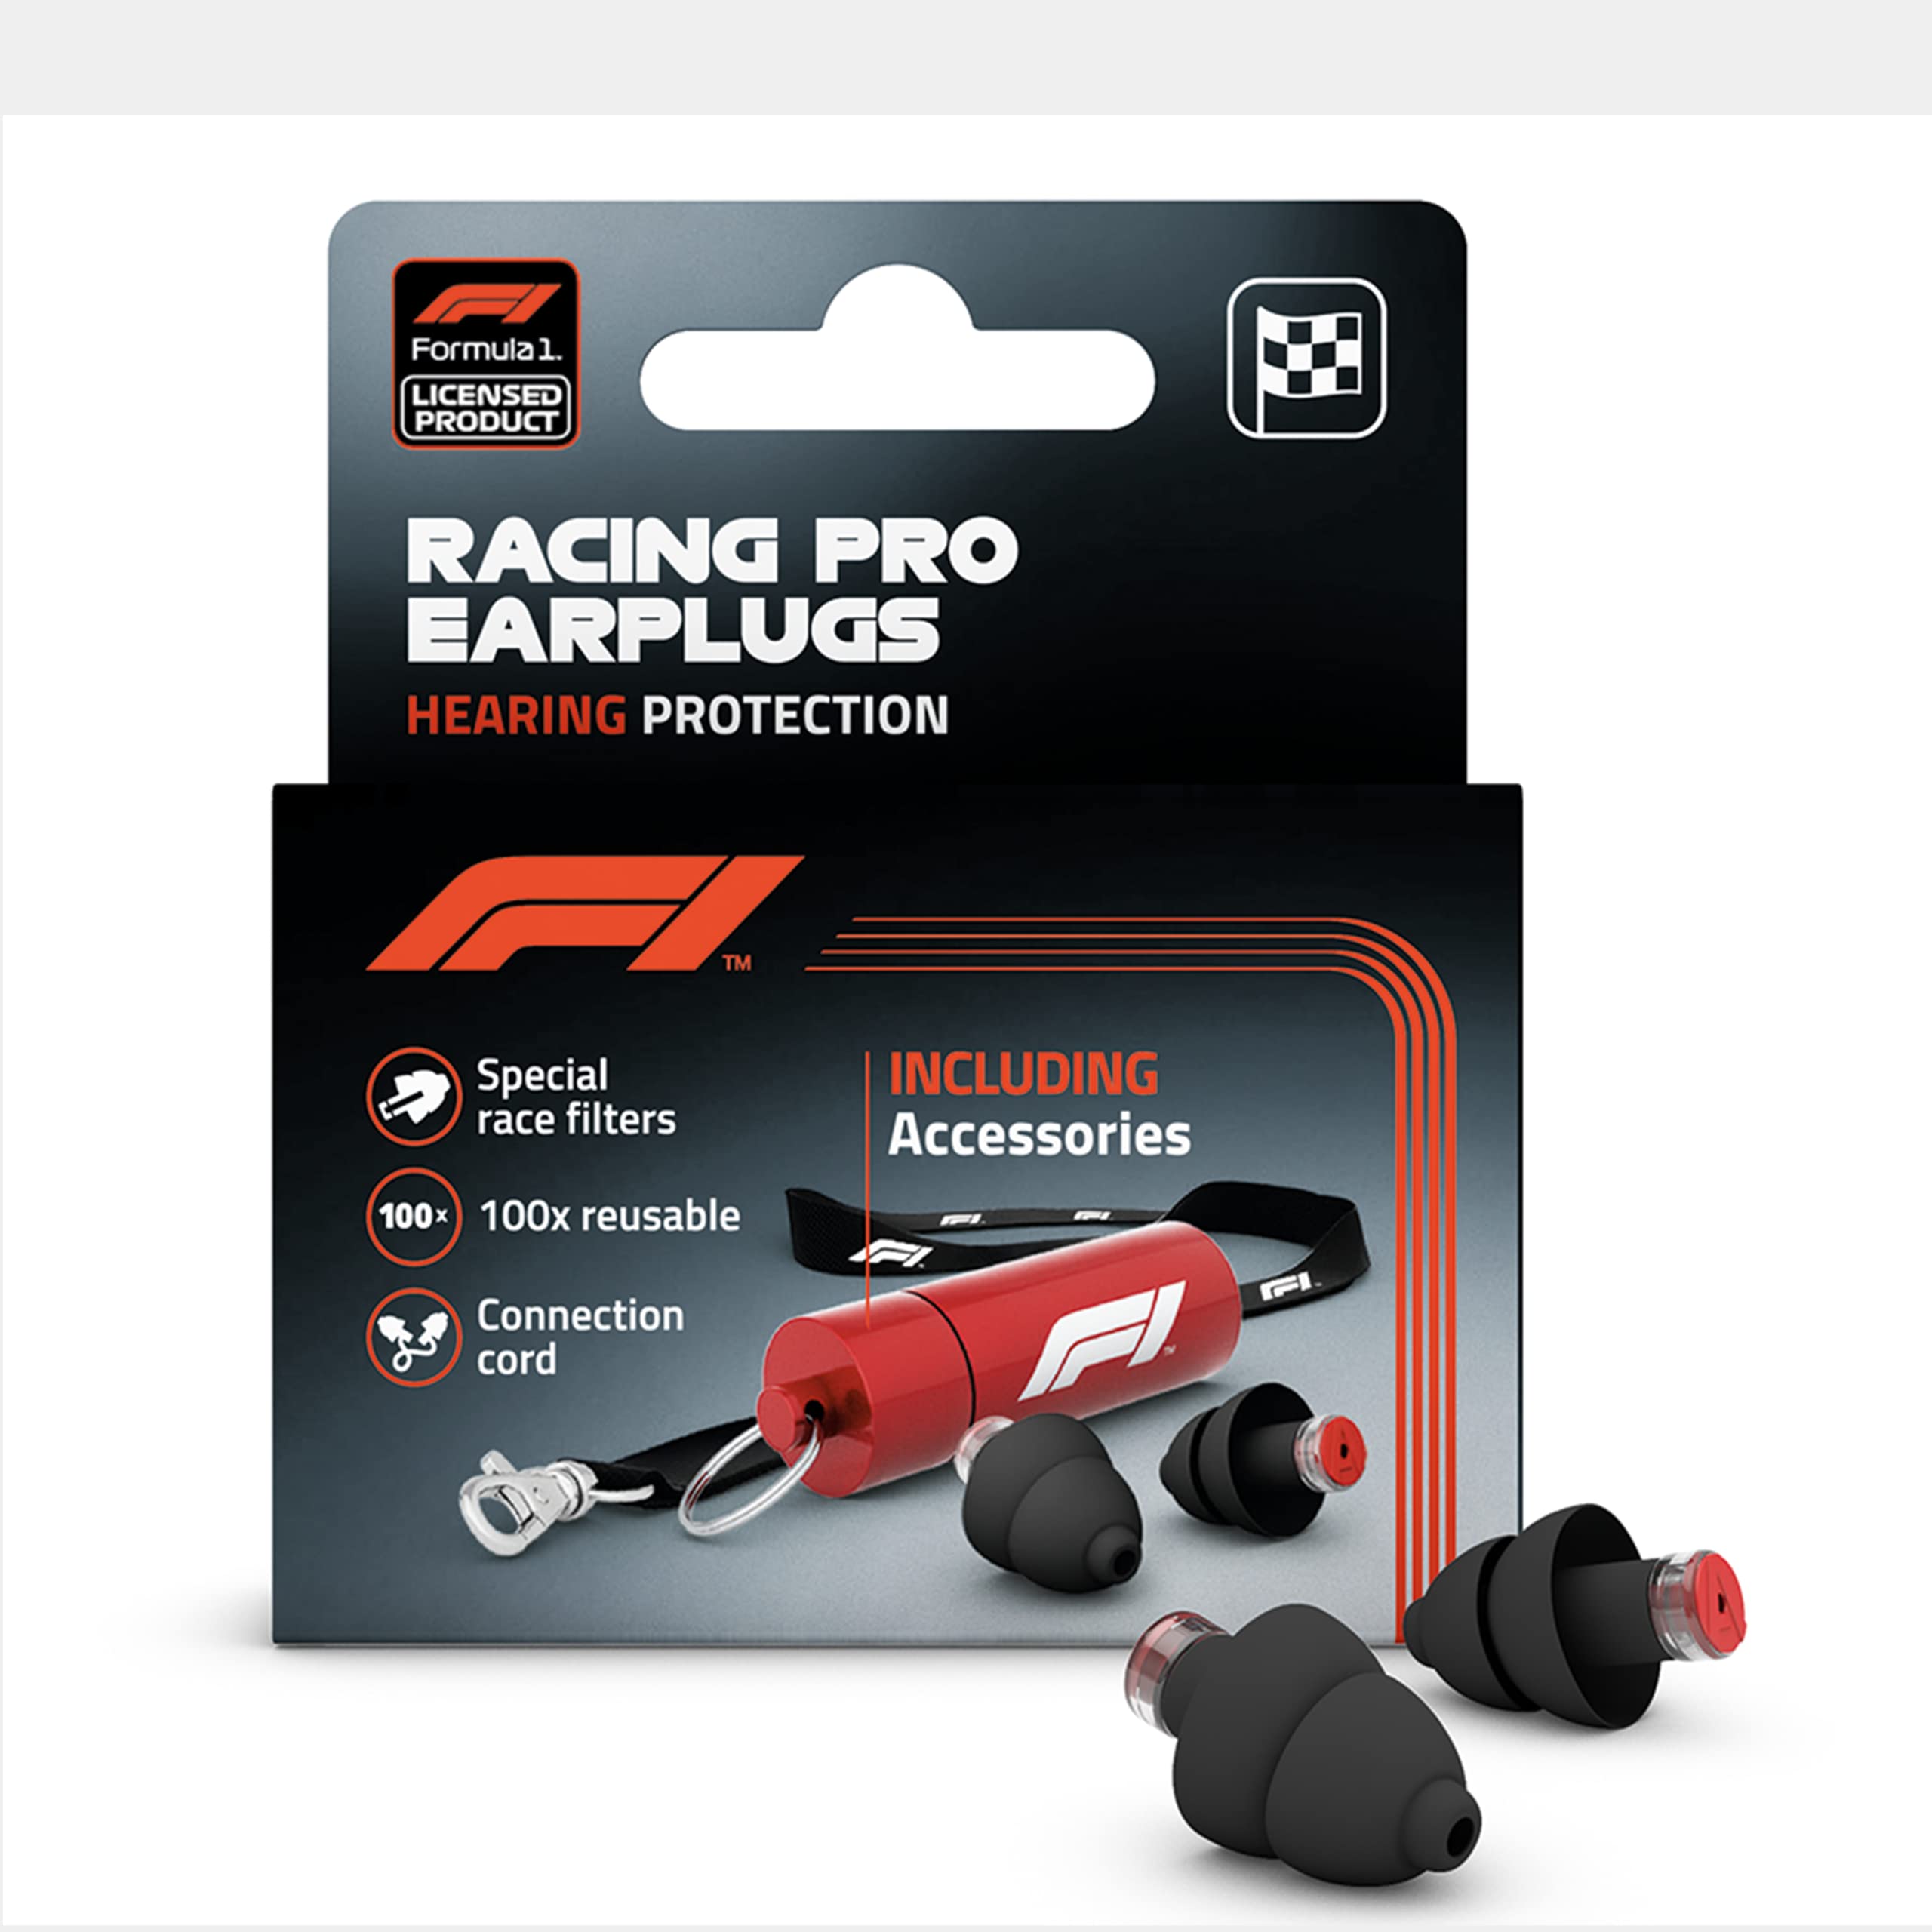 Alpine F1® Ohrstöpsel - Wiederverwendbarer F1 Gehörschutz für Veranstaltungen und laute Umgebung - Lärmreduktion von 22dB - Ultra Soft Comfort Gehörschutz - Formula 1 Product